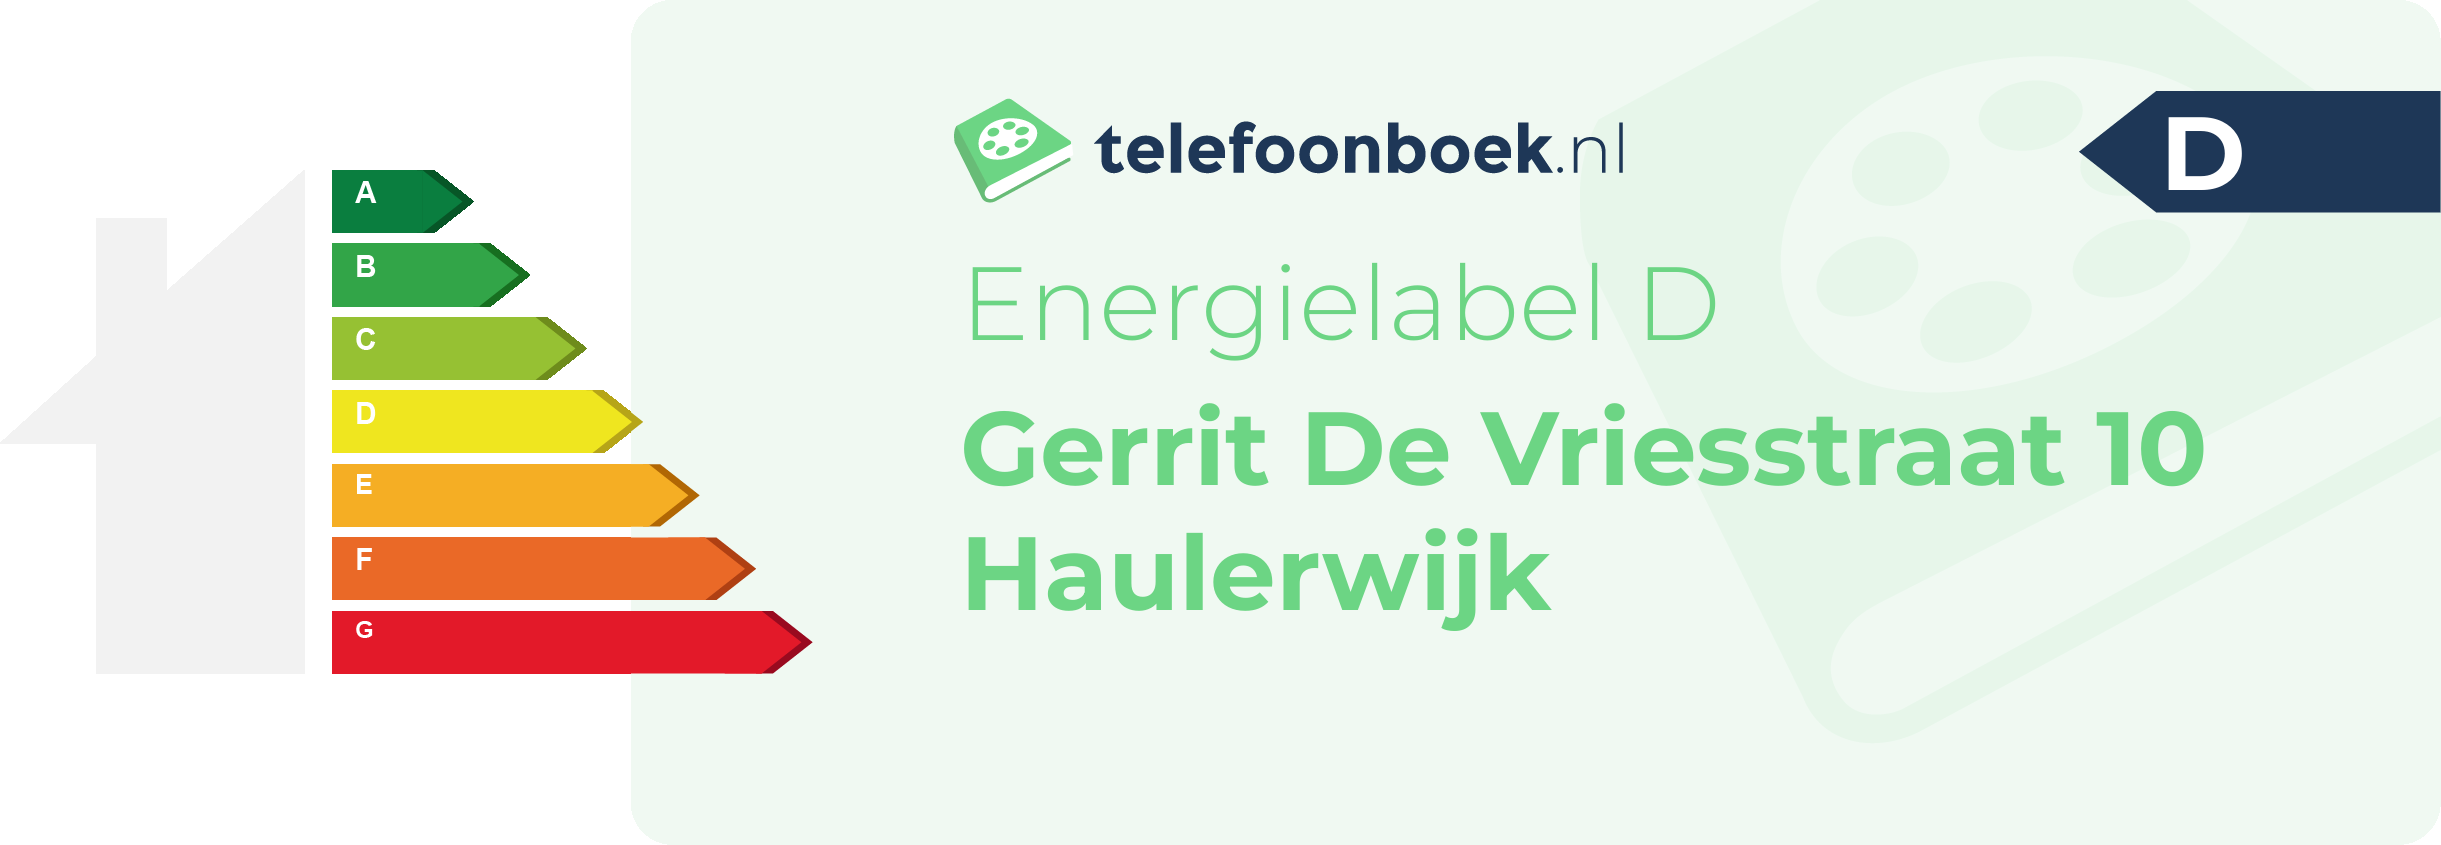 Energielabel Gerrit De Vriesstraat 10 Haulerwijk